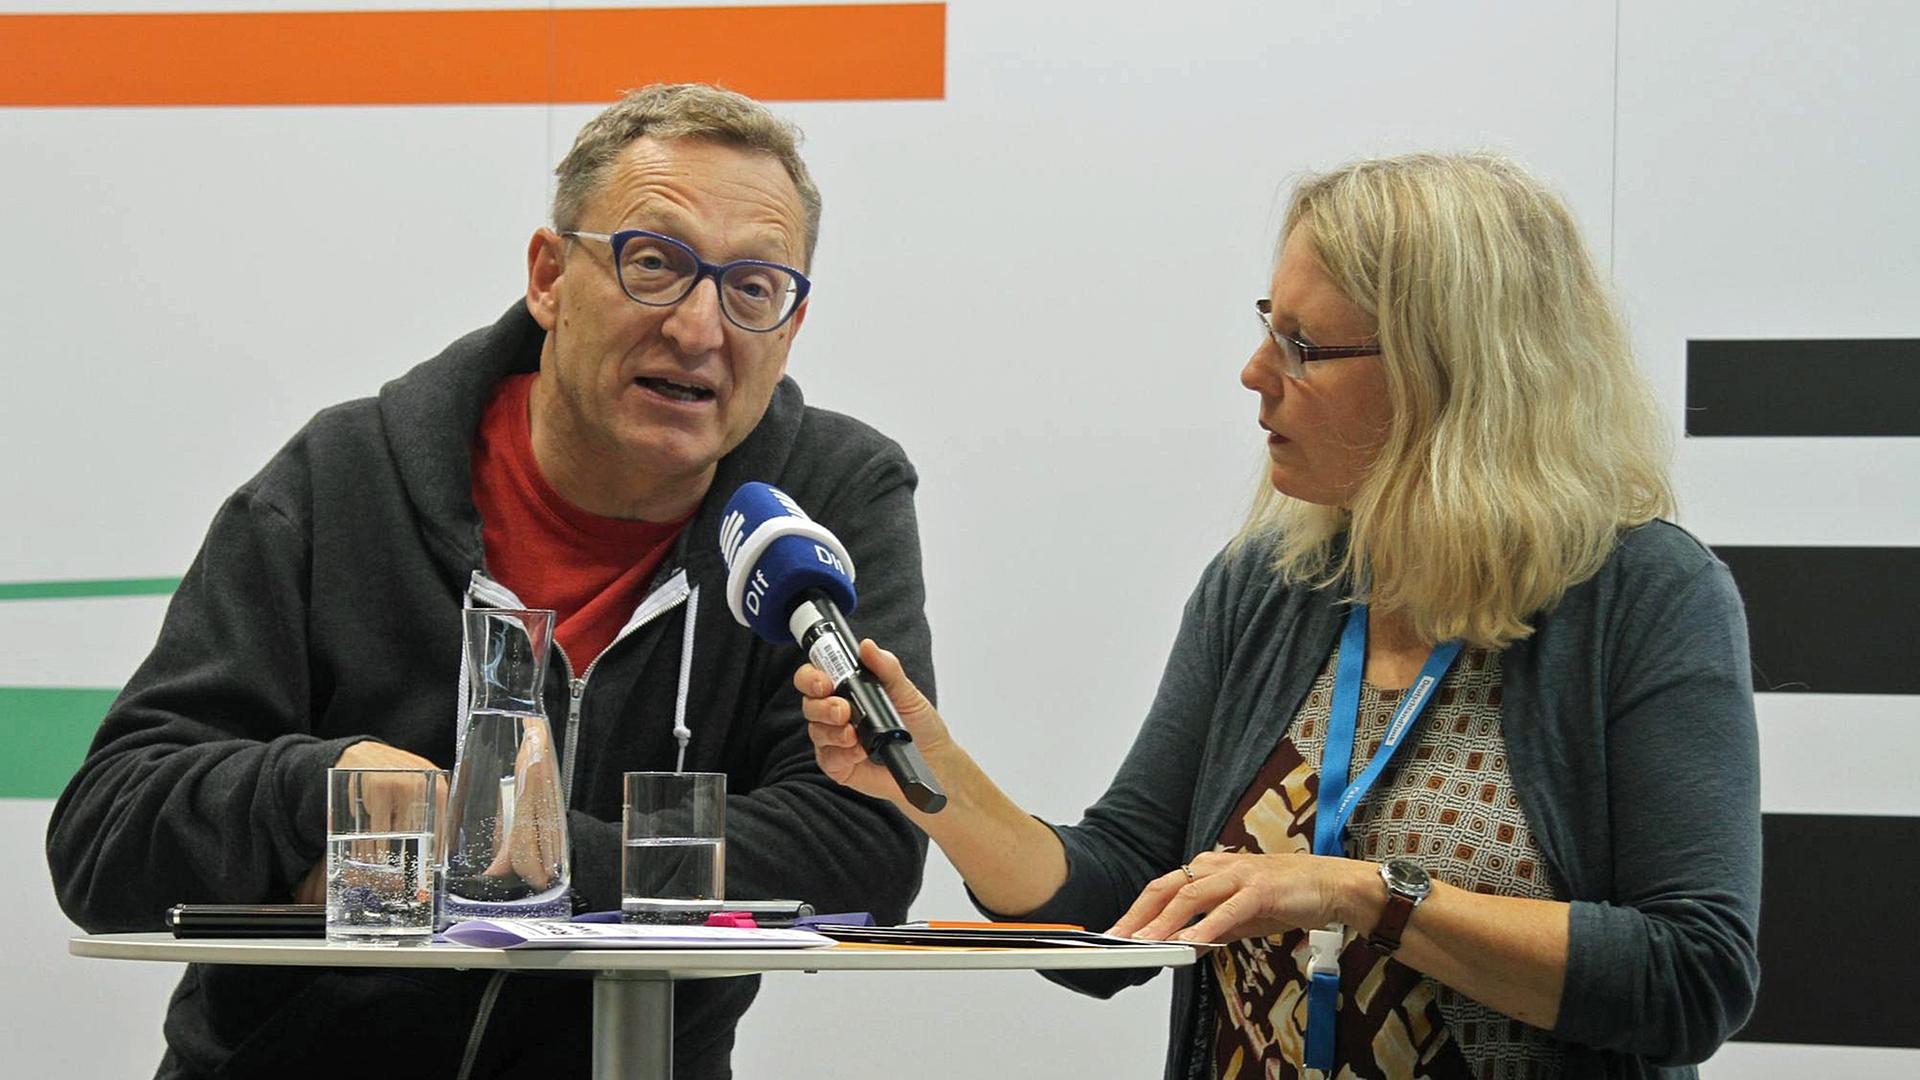 Daten-Experte Andreas Weigend und Dlf-Redakteurin Jule Reimer auf der Frankfurter Buchmesse 2017